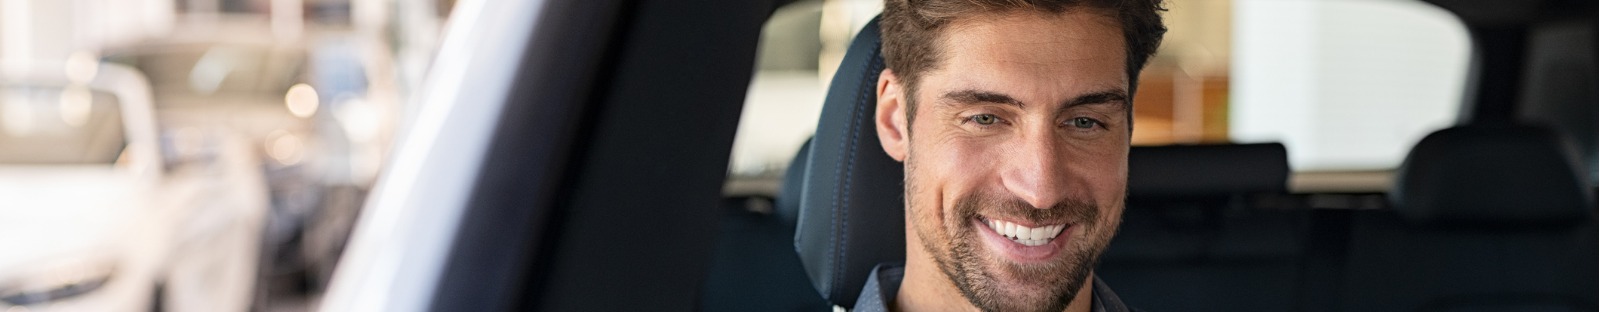 Smiling man driving car